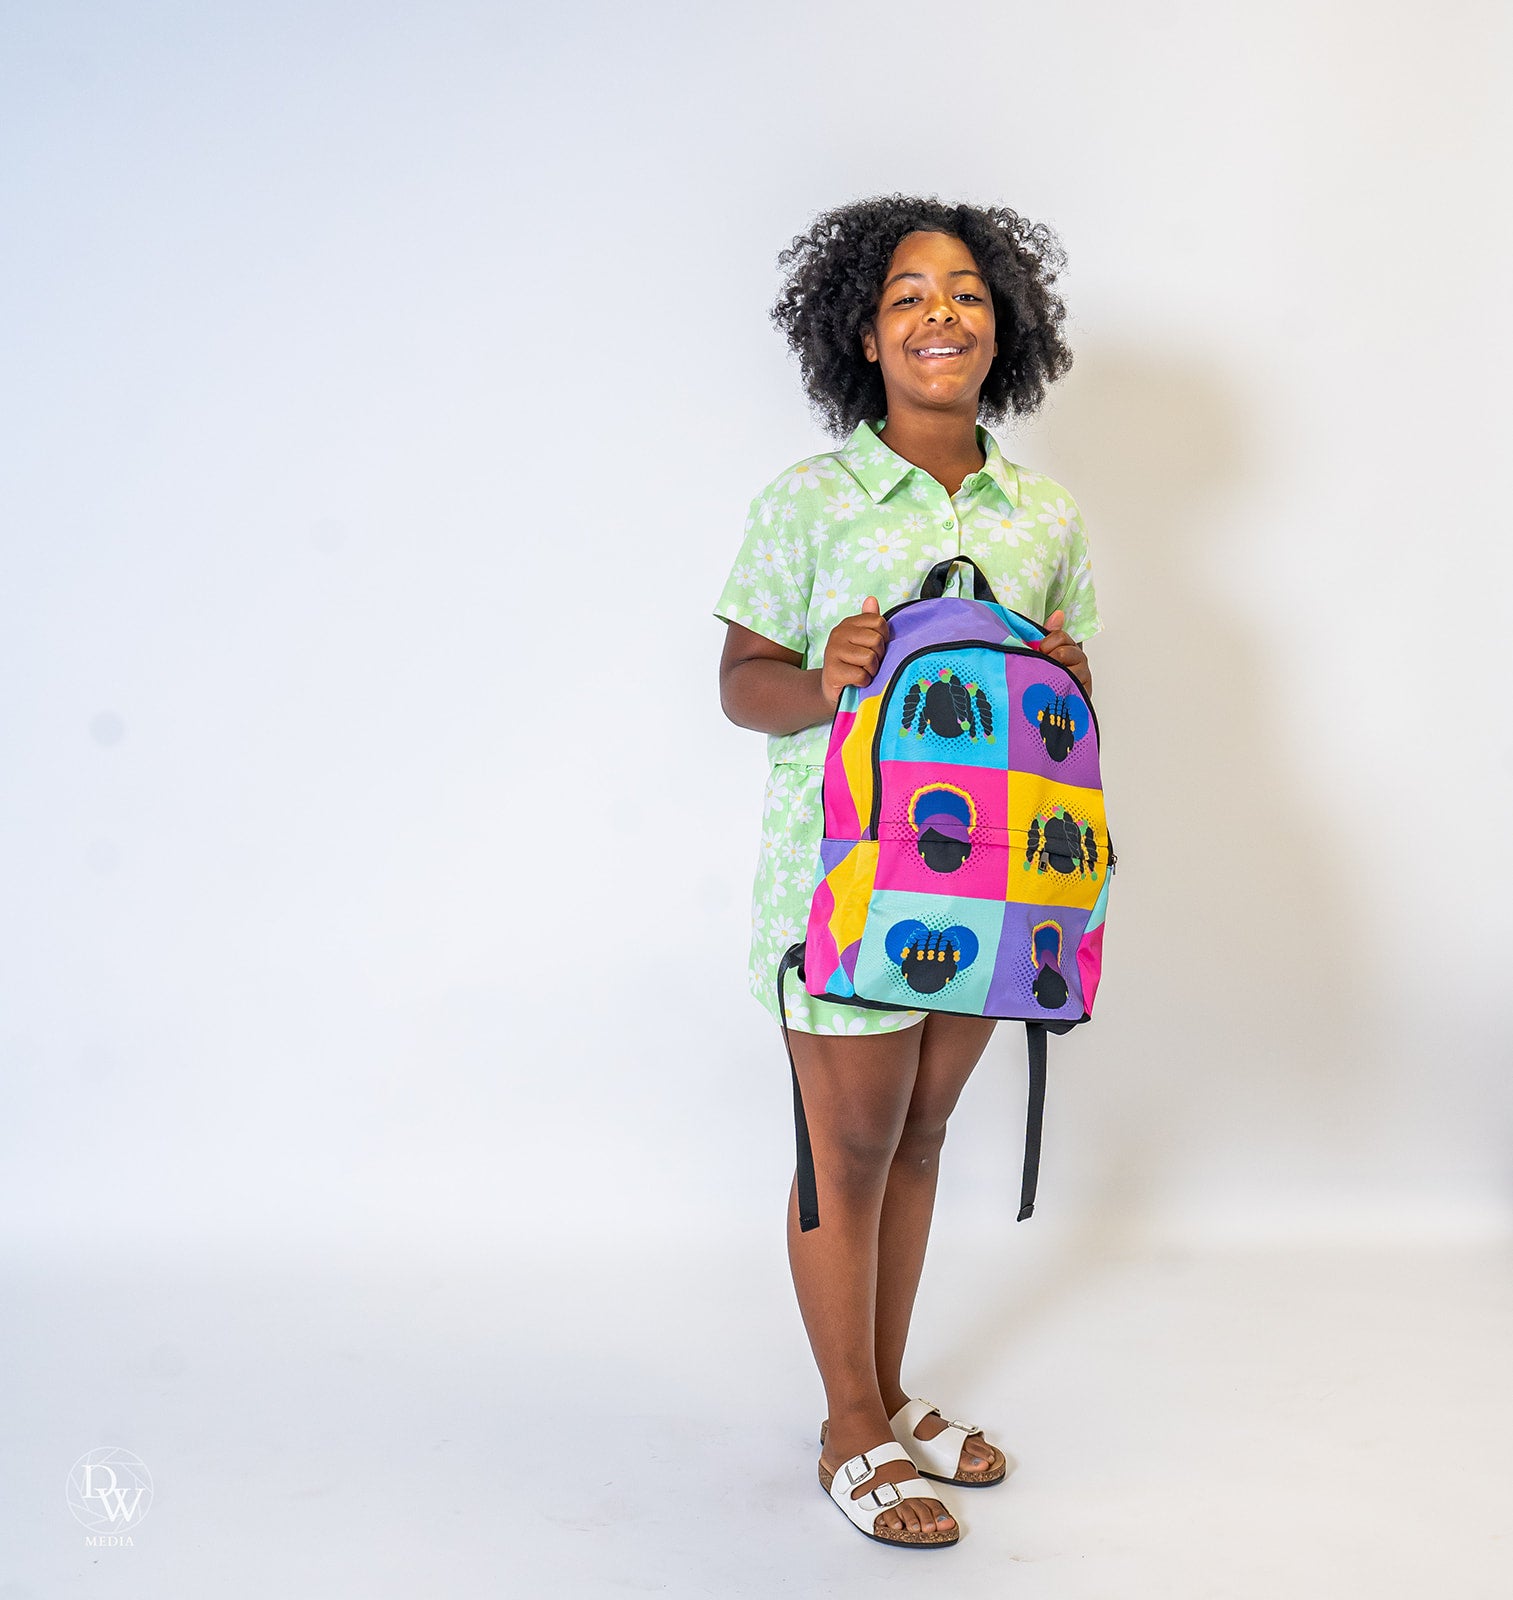 Color Block Girls Backpack